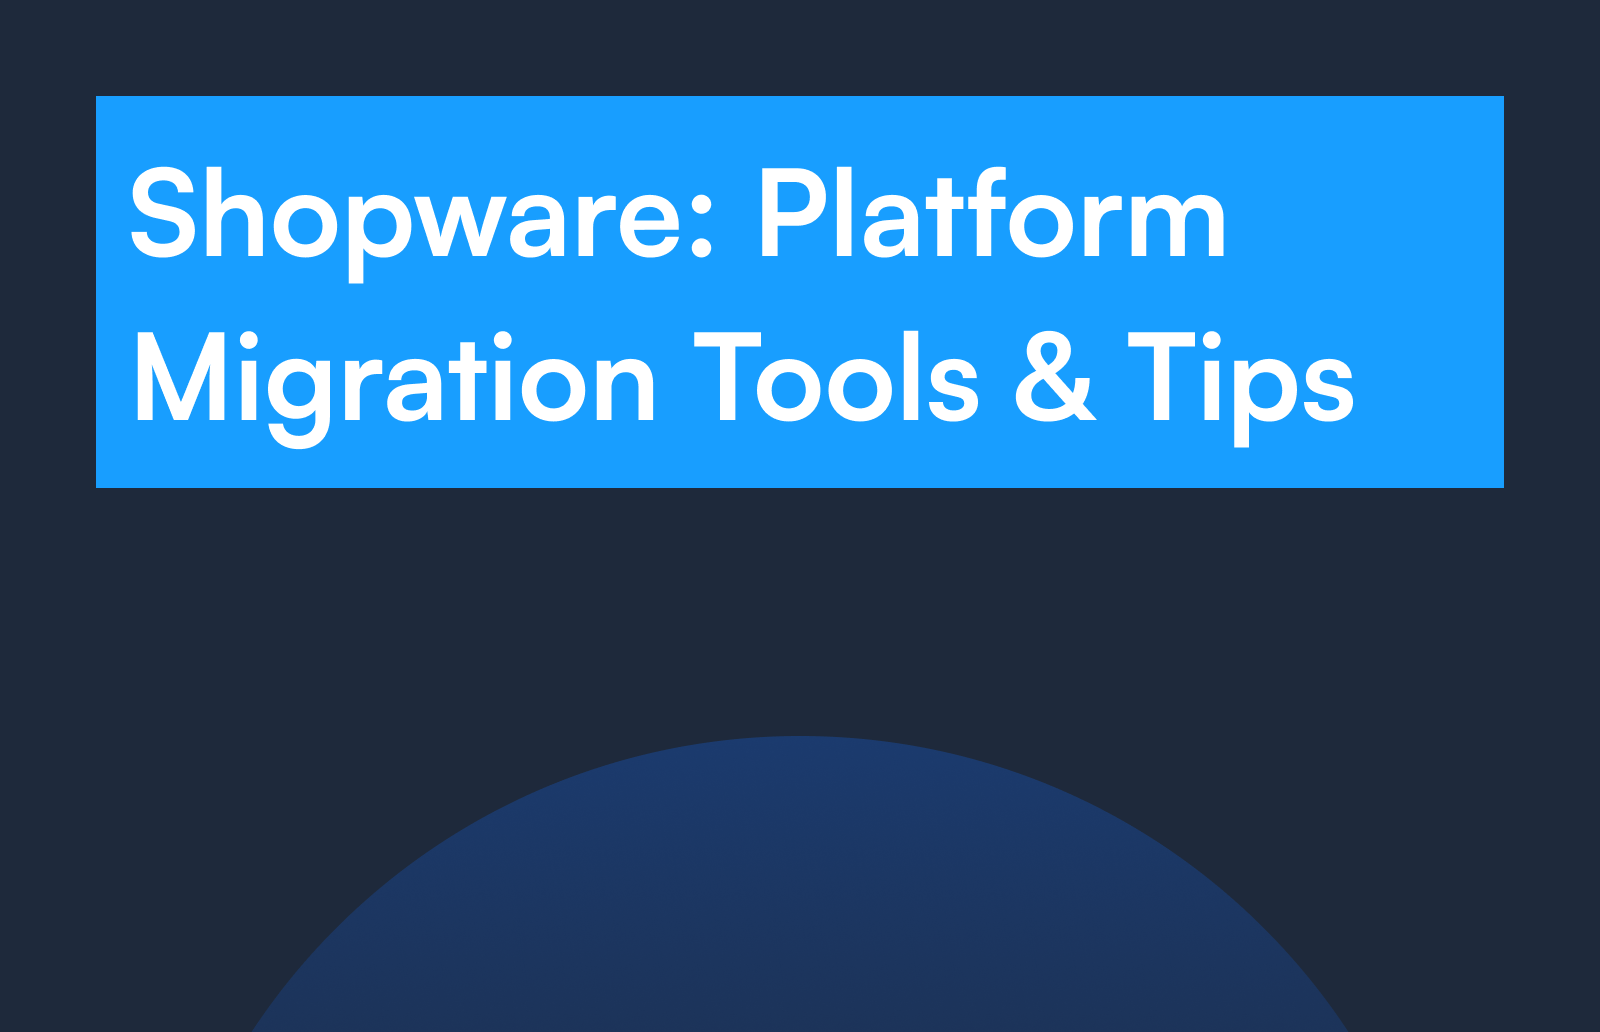 Shopware: Platform Migration Tools & Tips